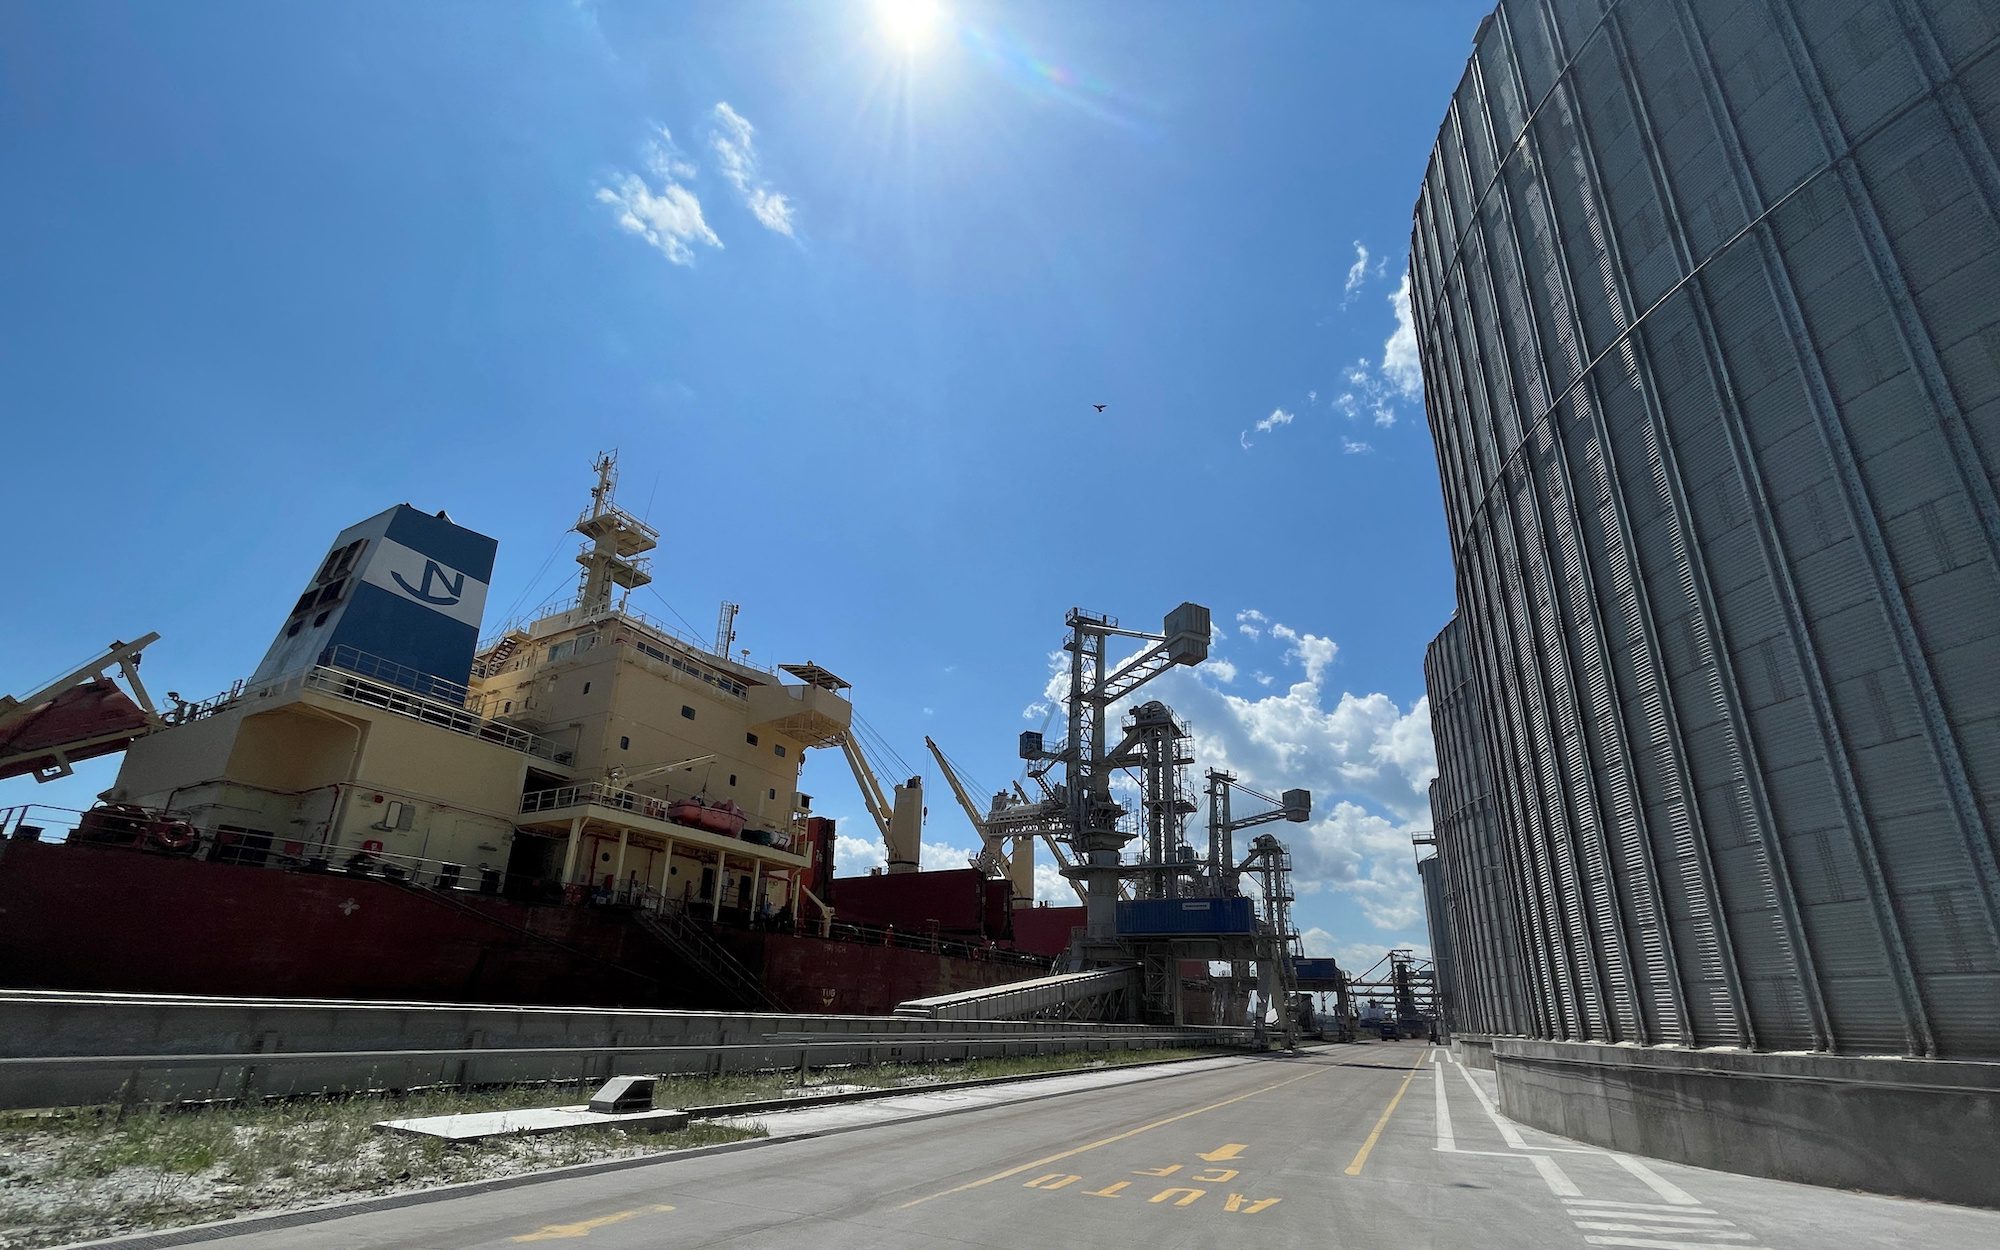 Romanian Port Races Against Clock to Move Ukrainian Grain